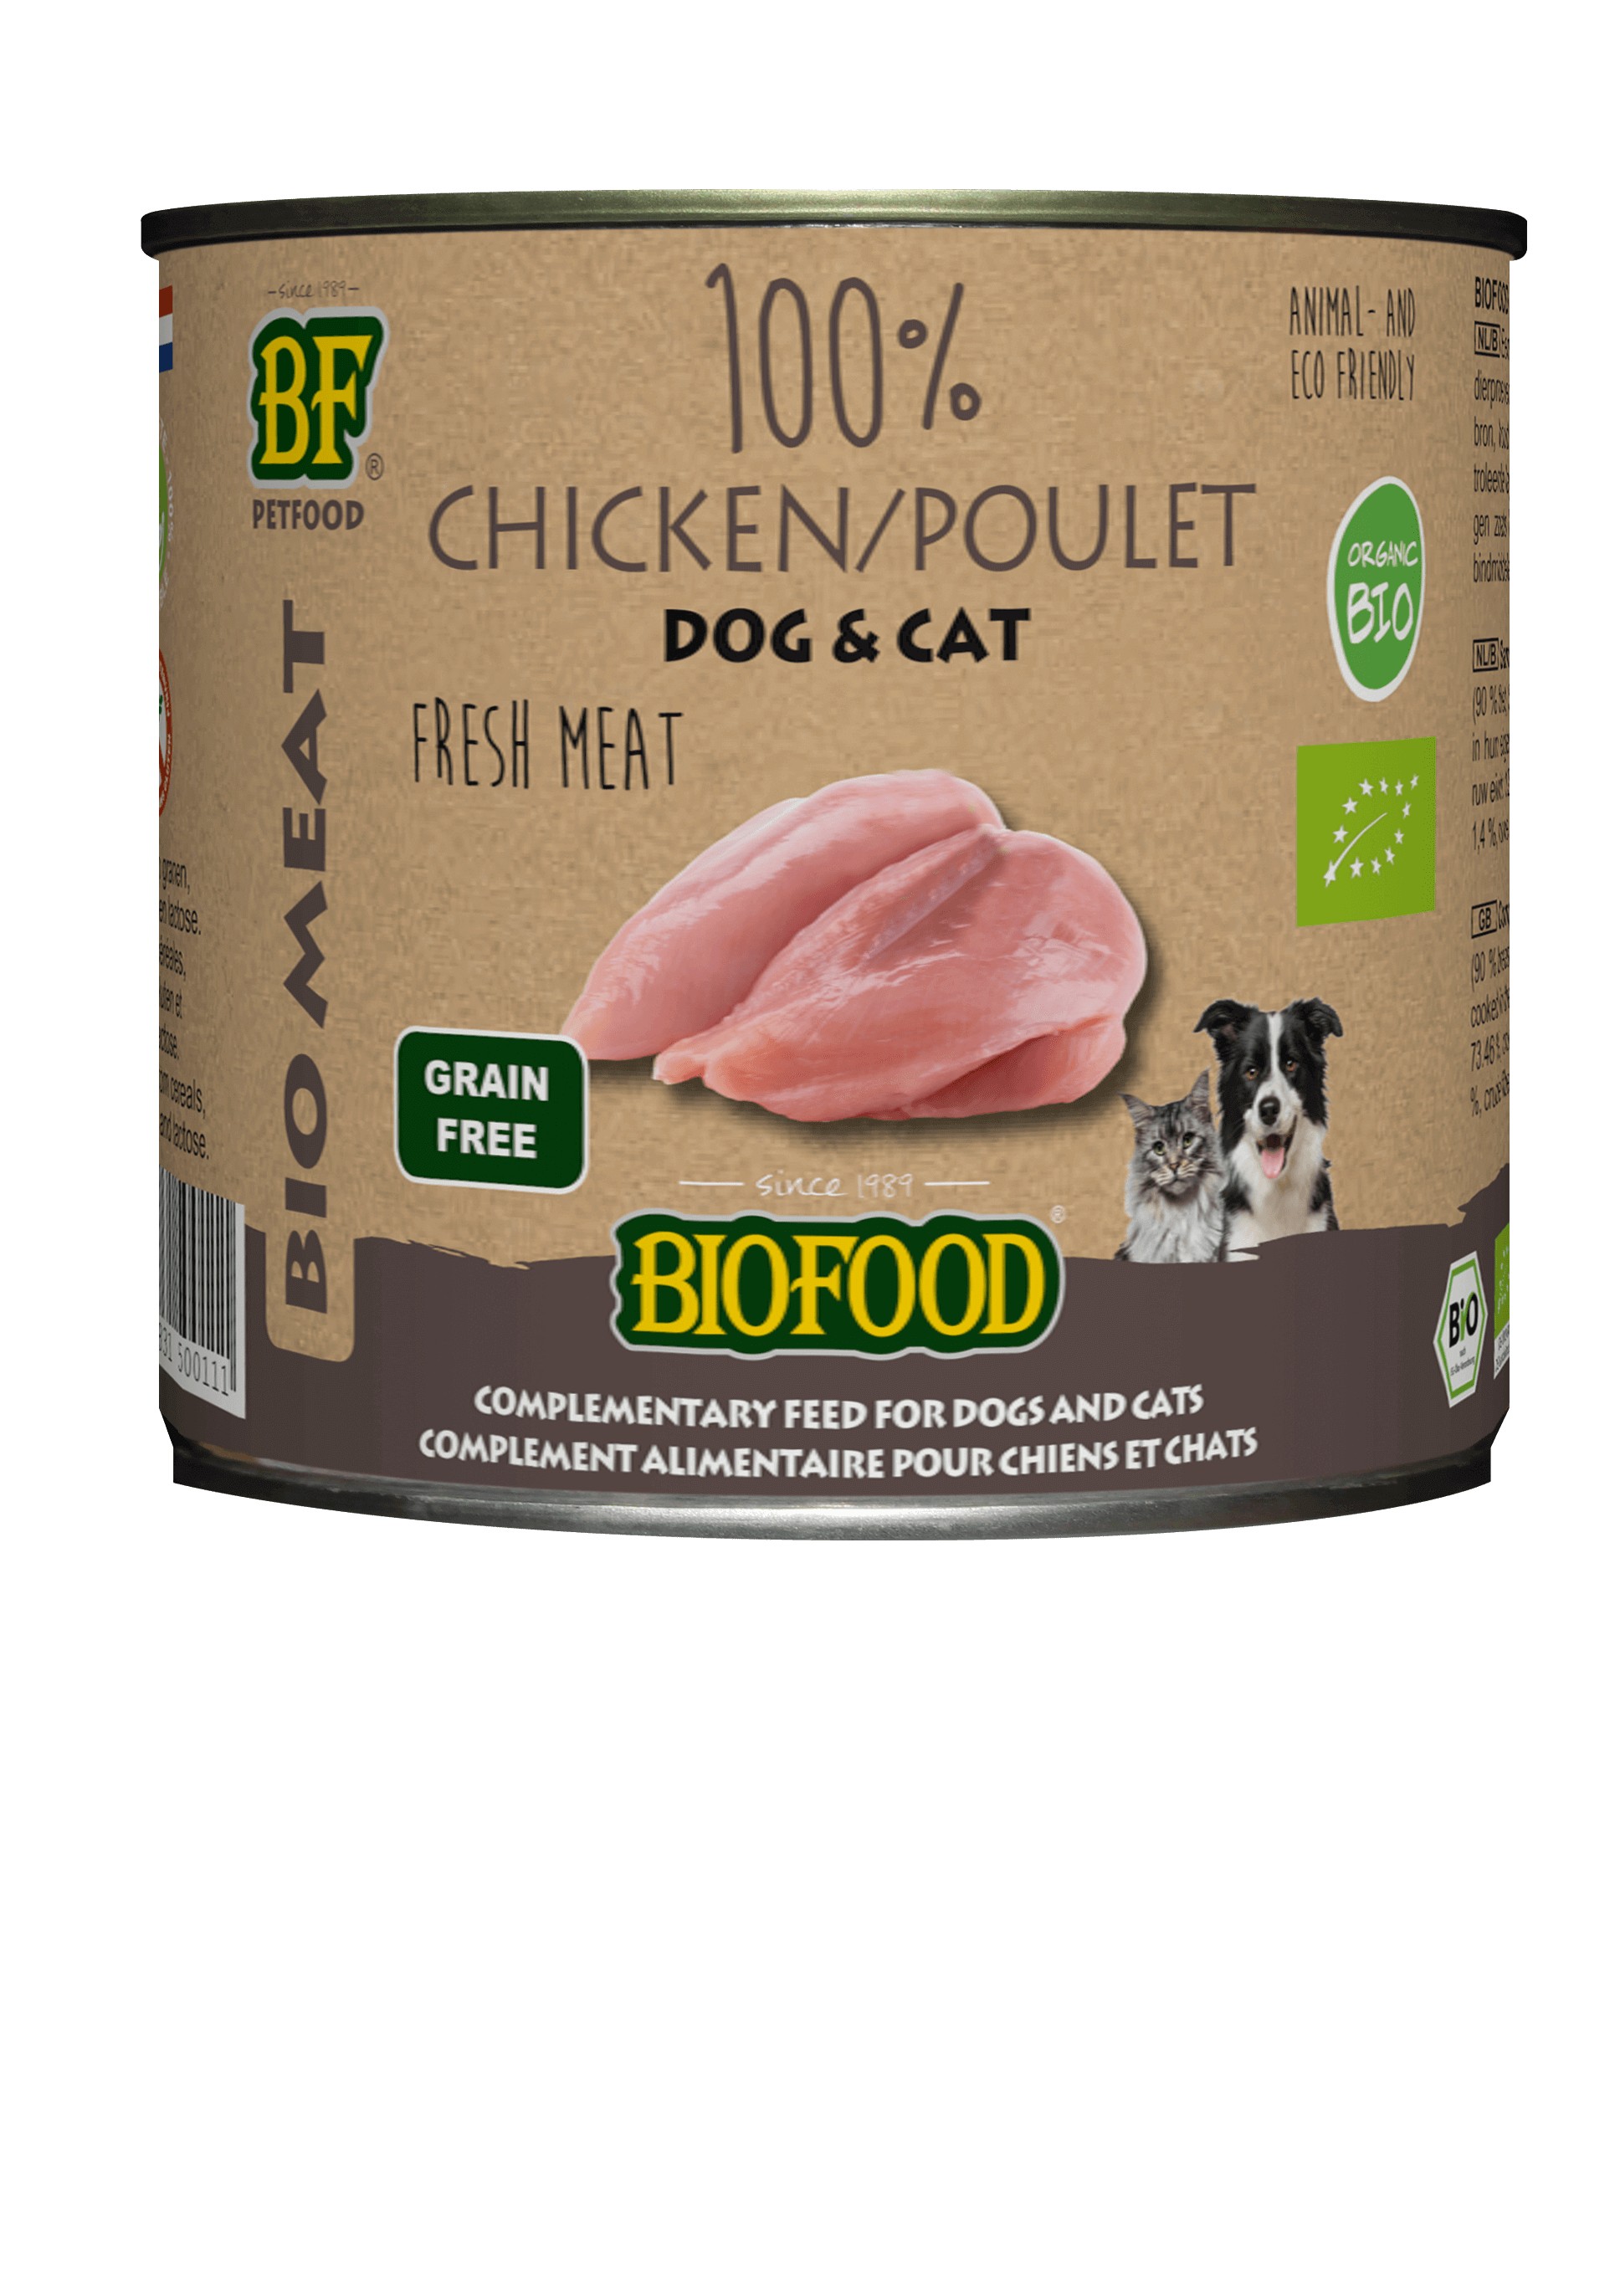 BF Petfood Biofood Organic kip voor hond en kat